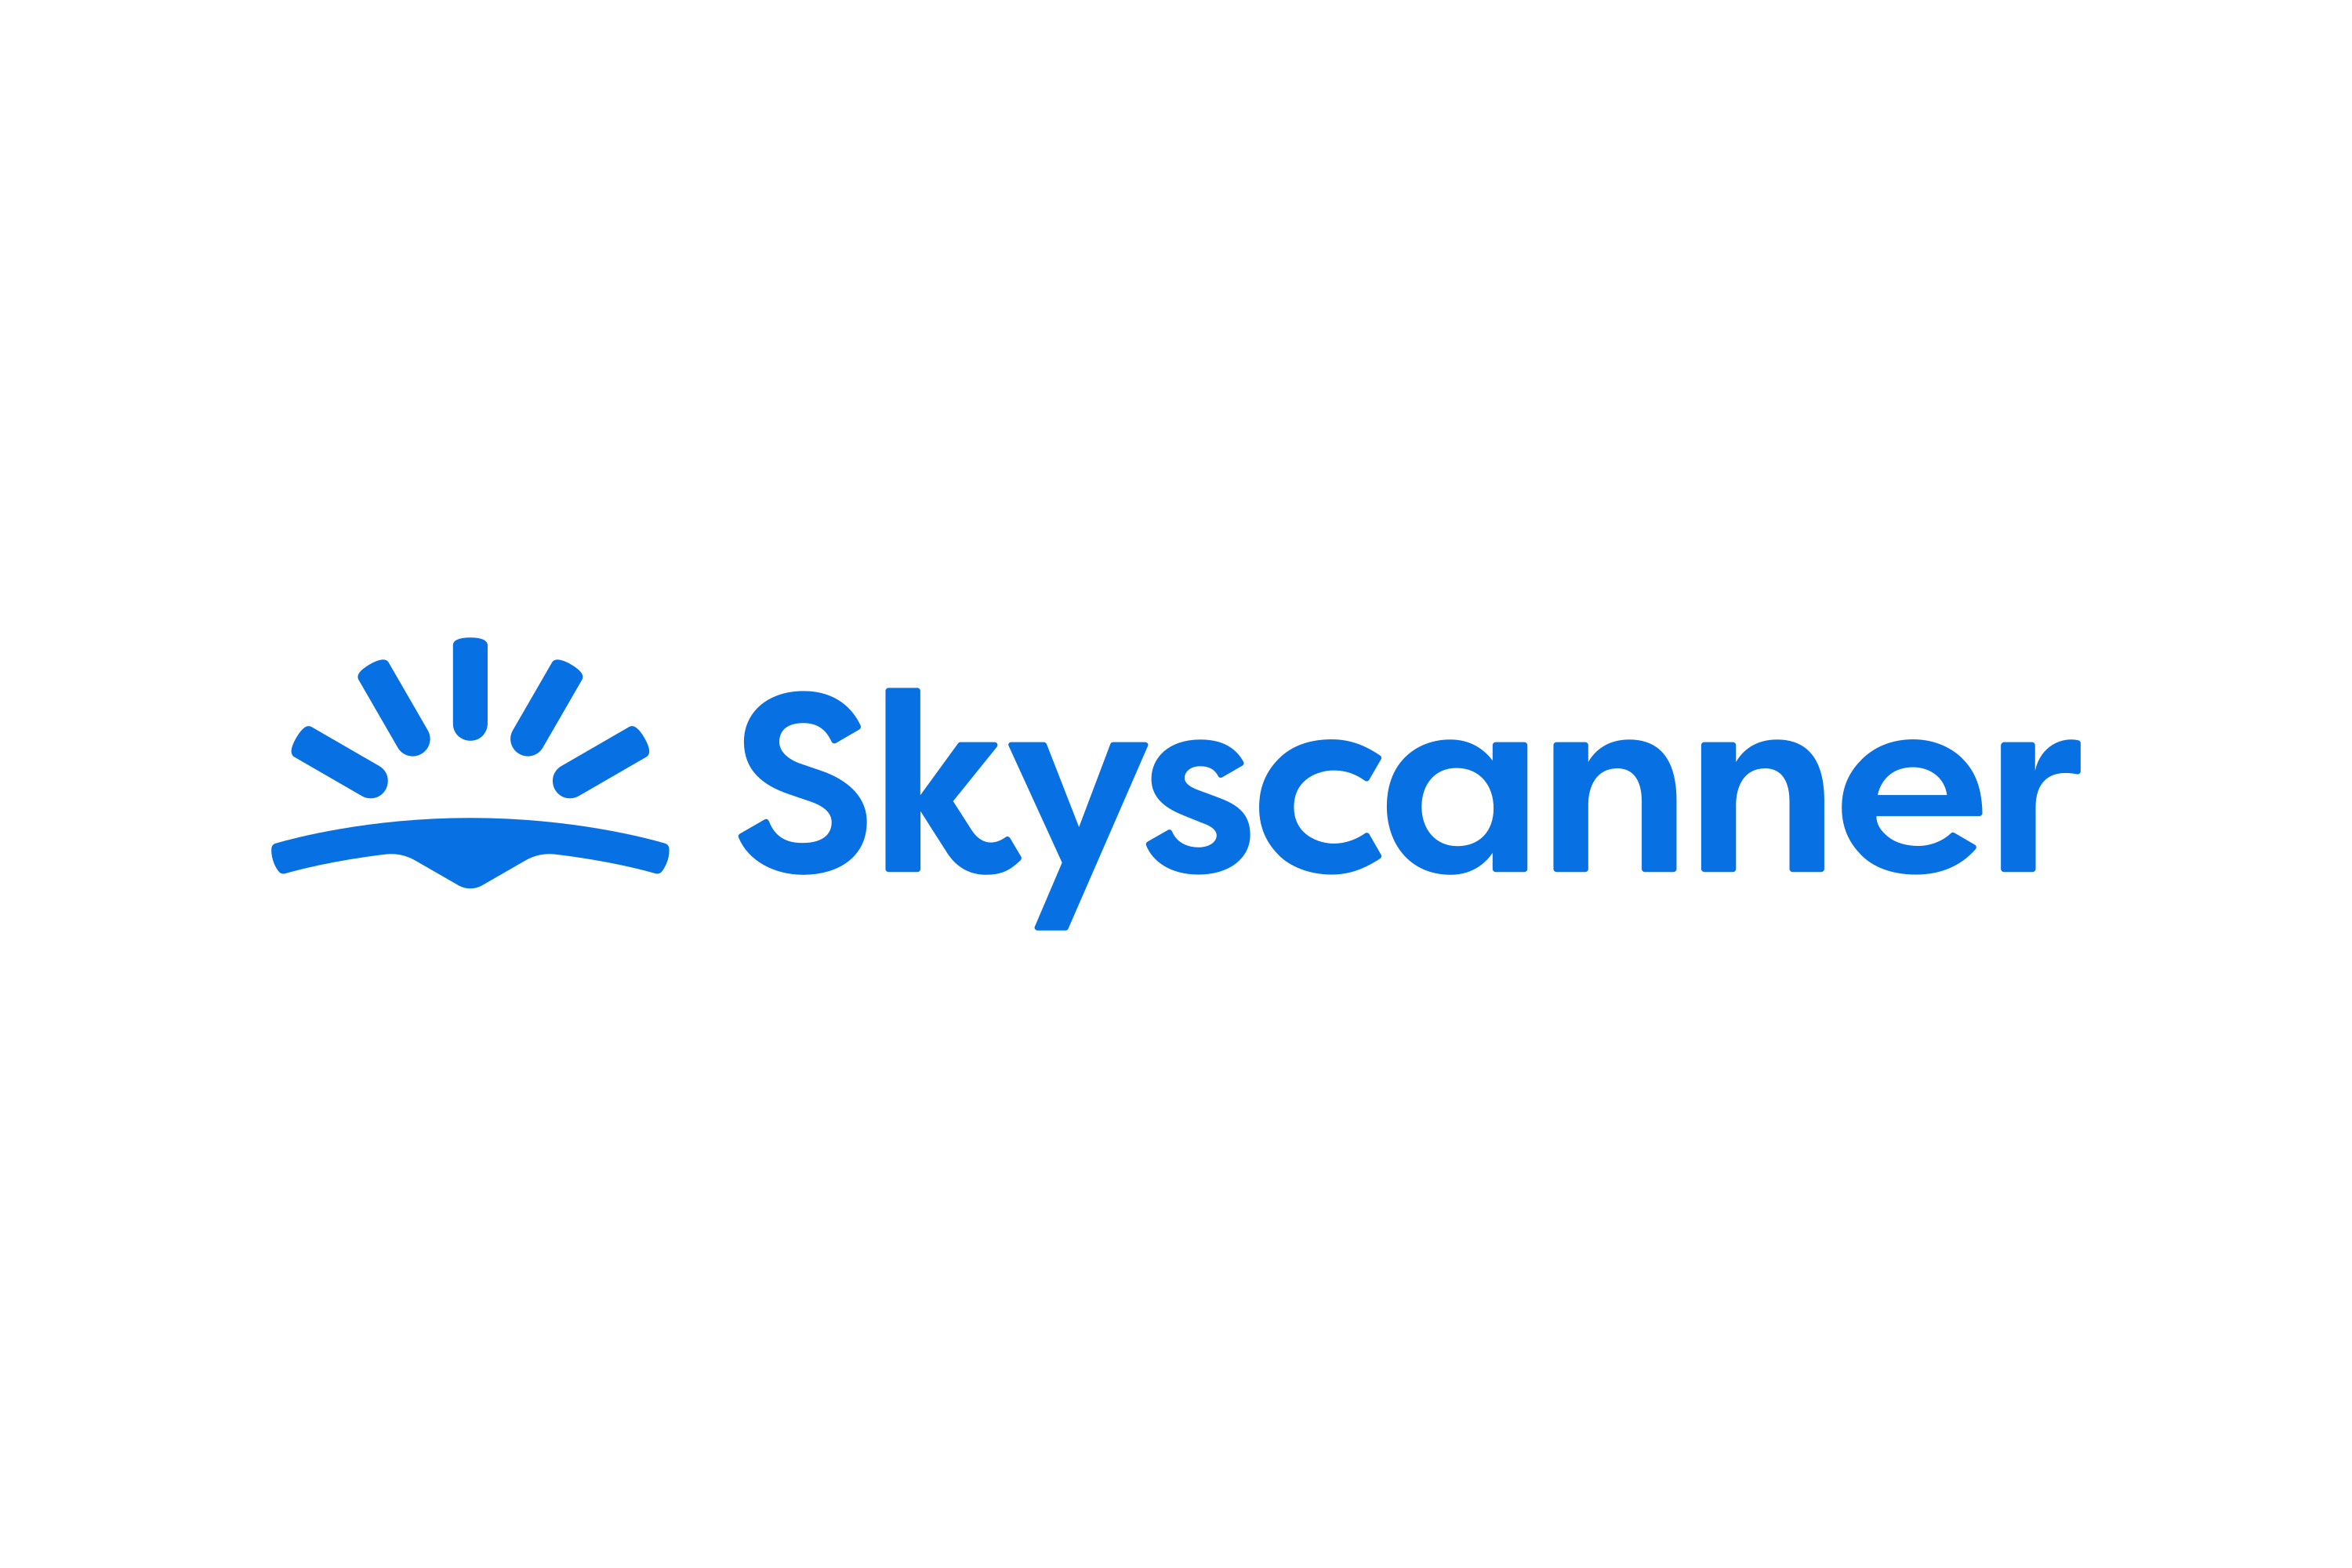 Download Skyscanner  Logo in SVG Vector or PNG File Format 